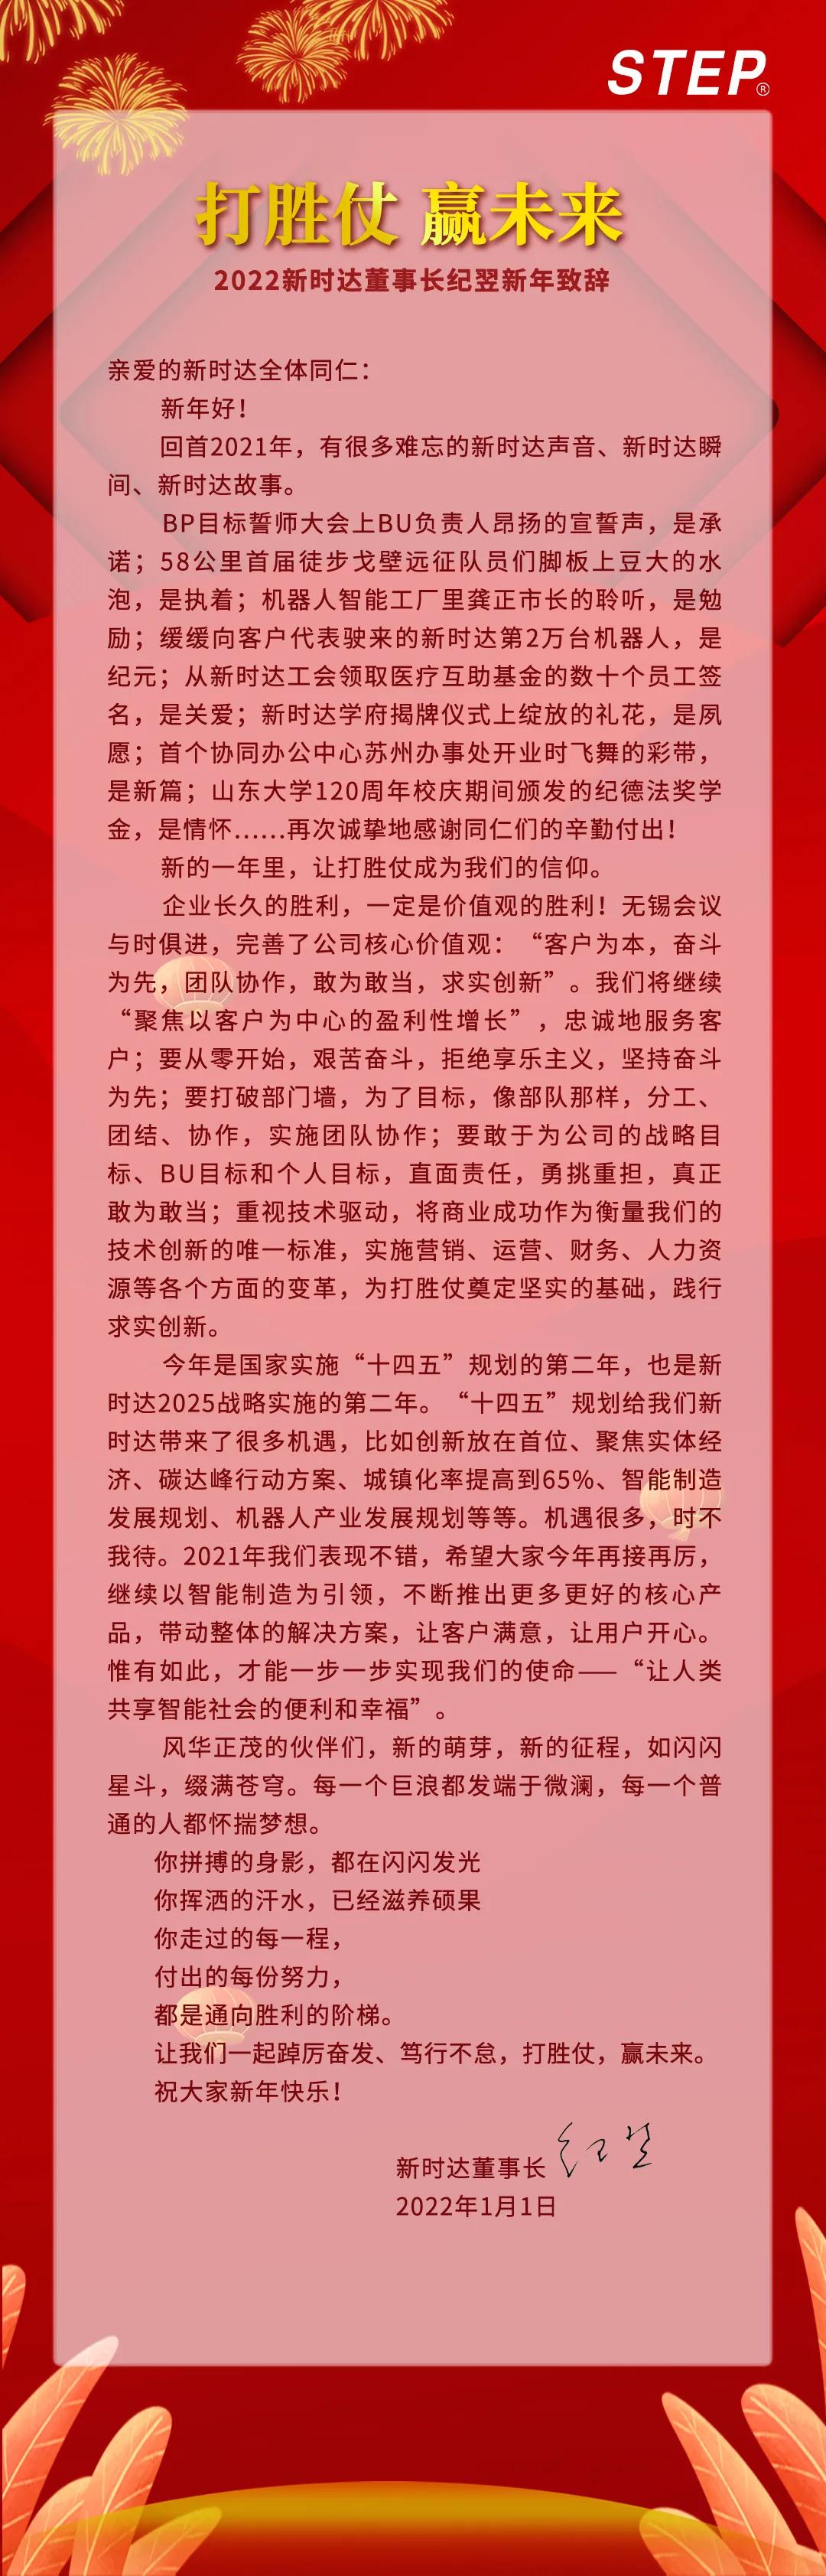 上海会通2022年元旦--新时达董事长纪翌新年致辞